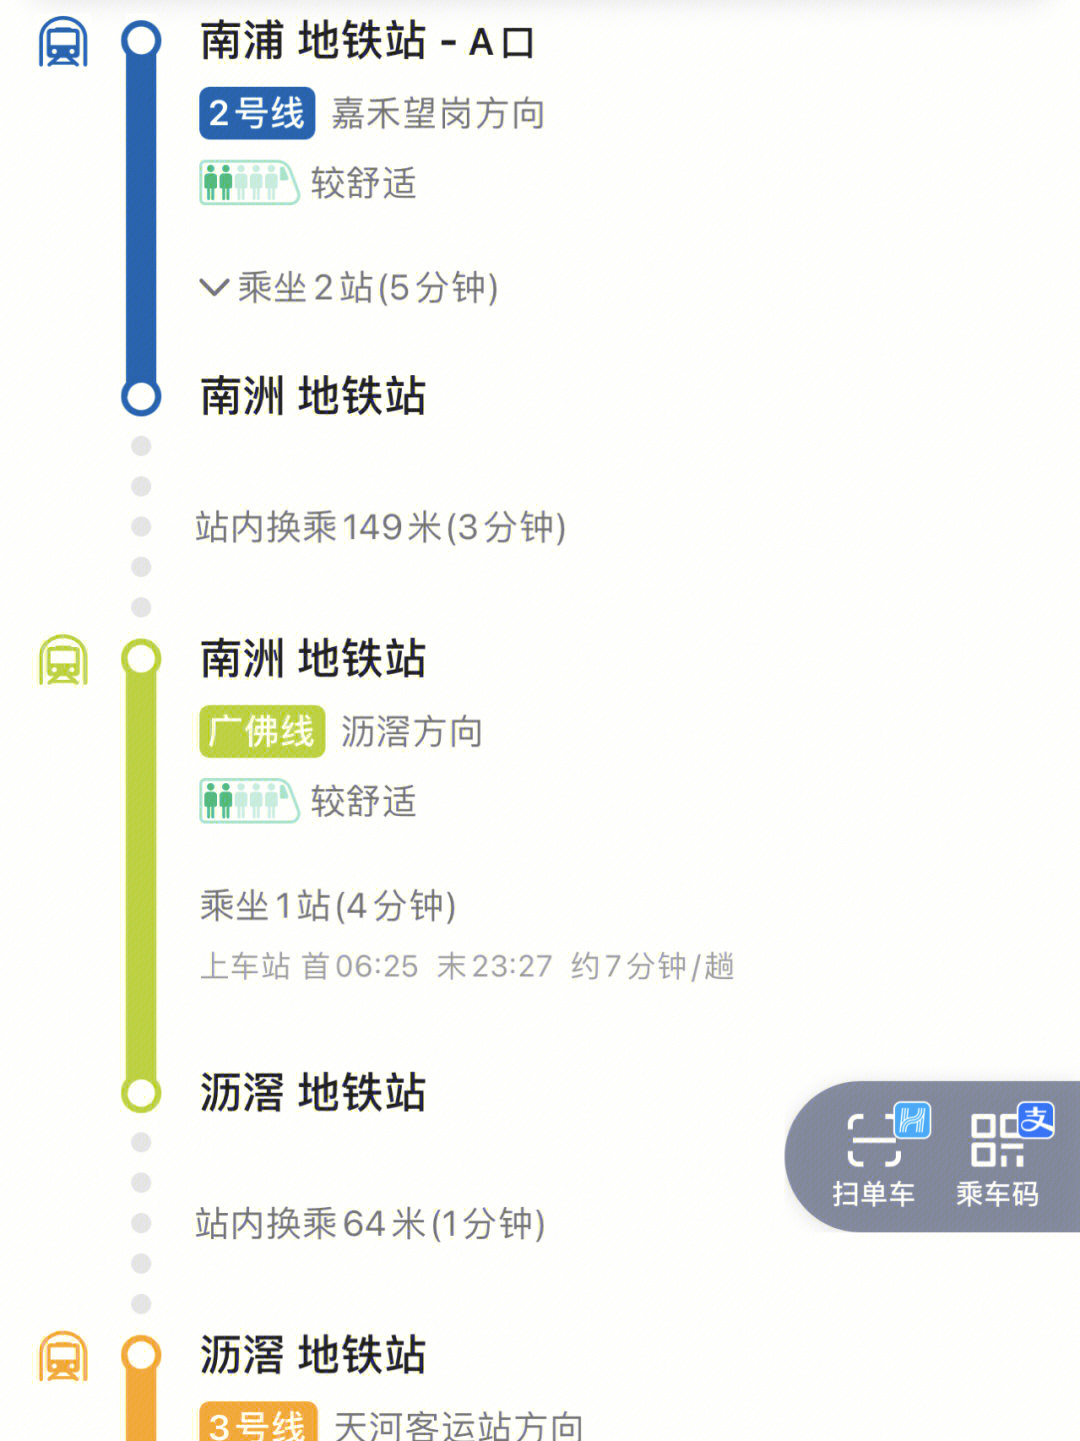 珠江新城地铁线路图片